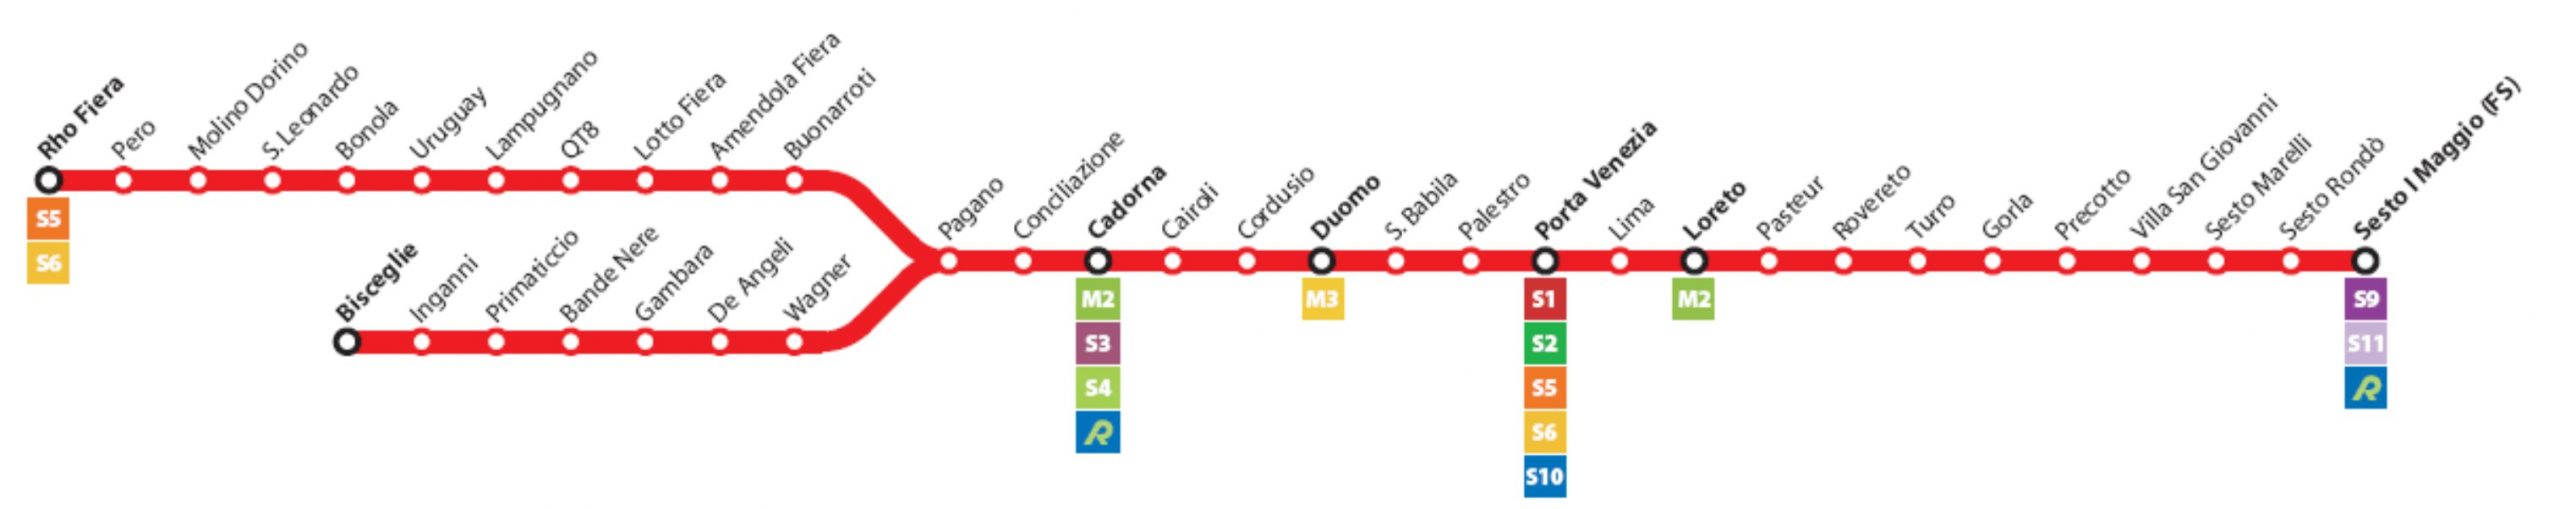 Le fermate della linea metro M1 di Milano